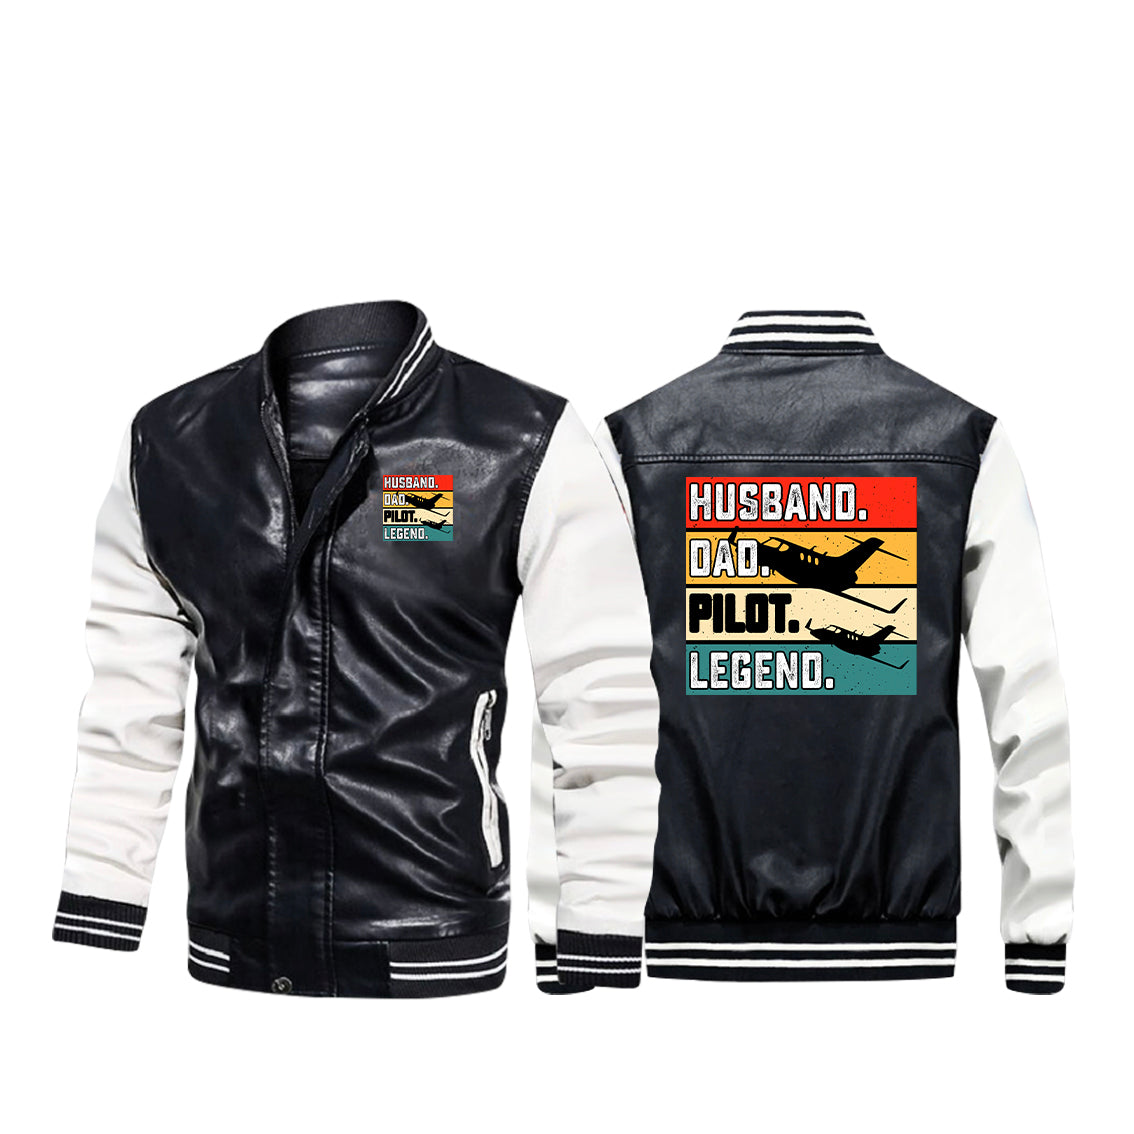 Husband & Dad & Pilot & Legend Designed Stylish Leather Bomber Jackets